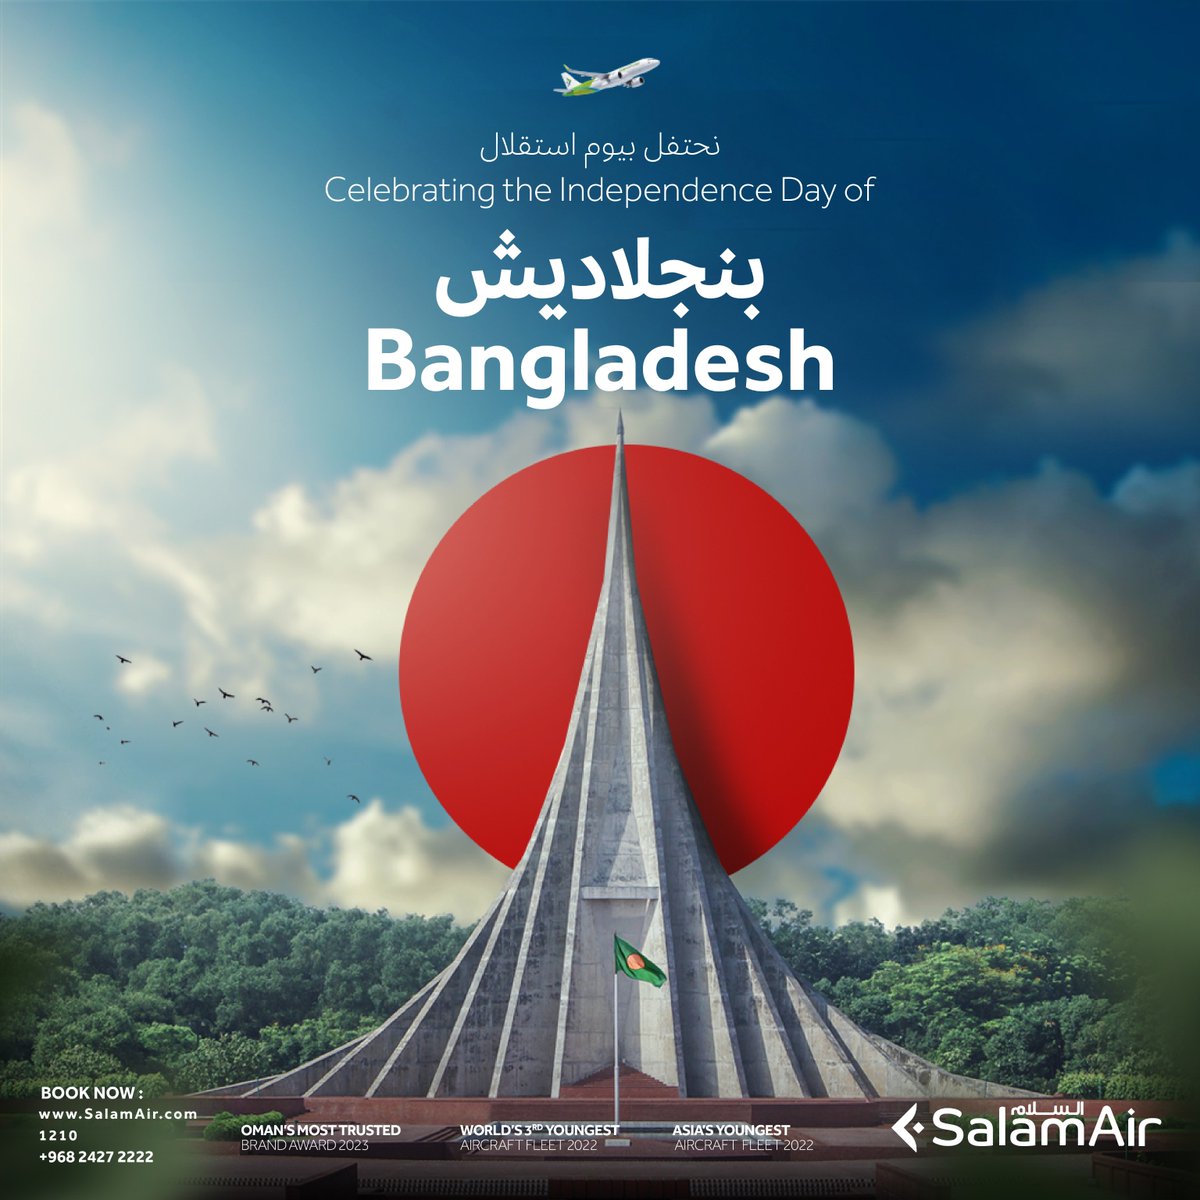 يوم استقلال سعيد، بنجلاديش! 🇧🇩